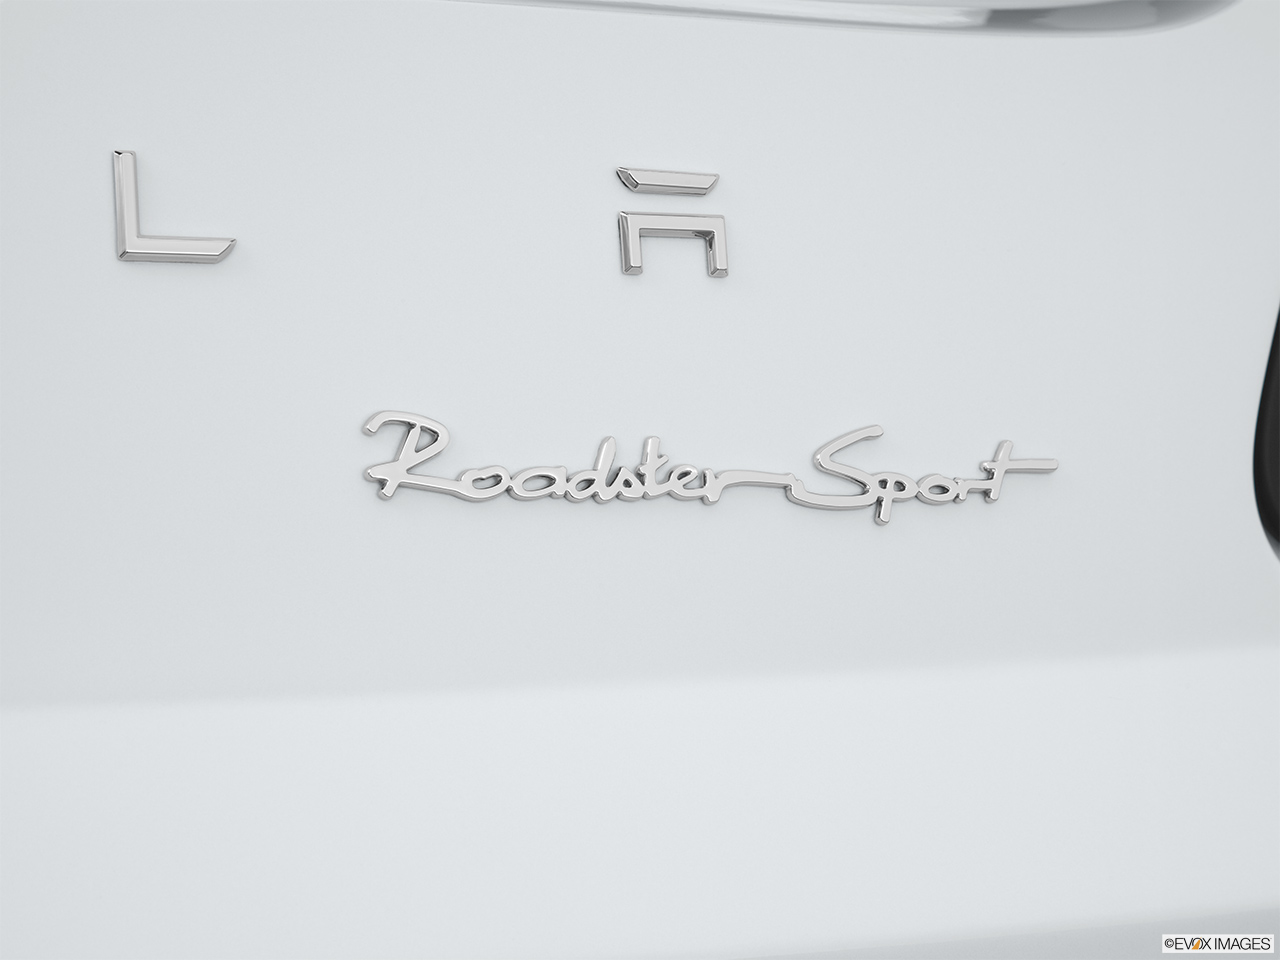 2010 Tesla Roadster sport Rear model badge/emblem 